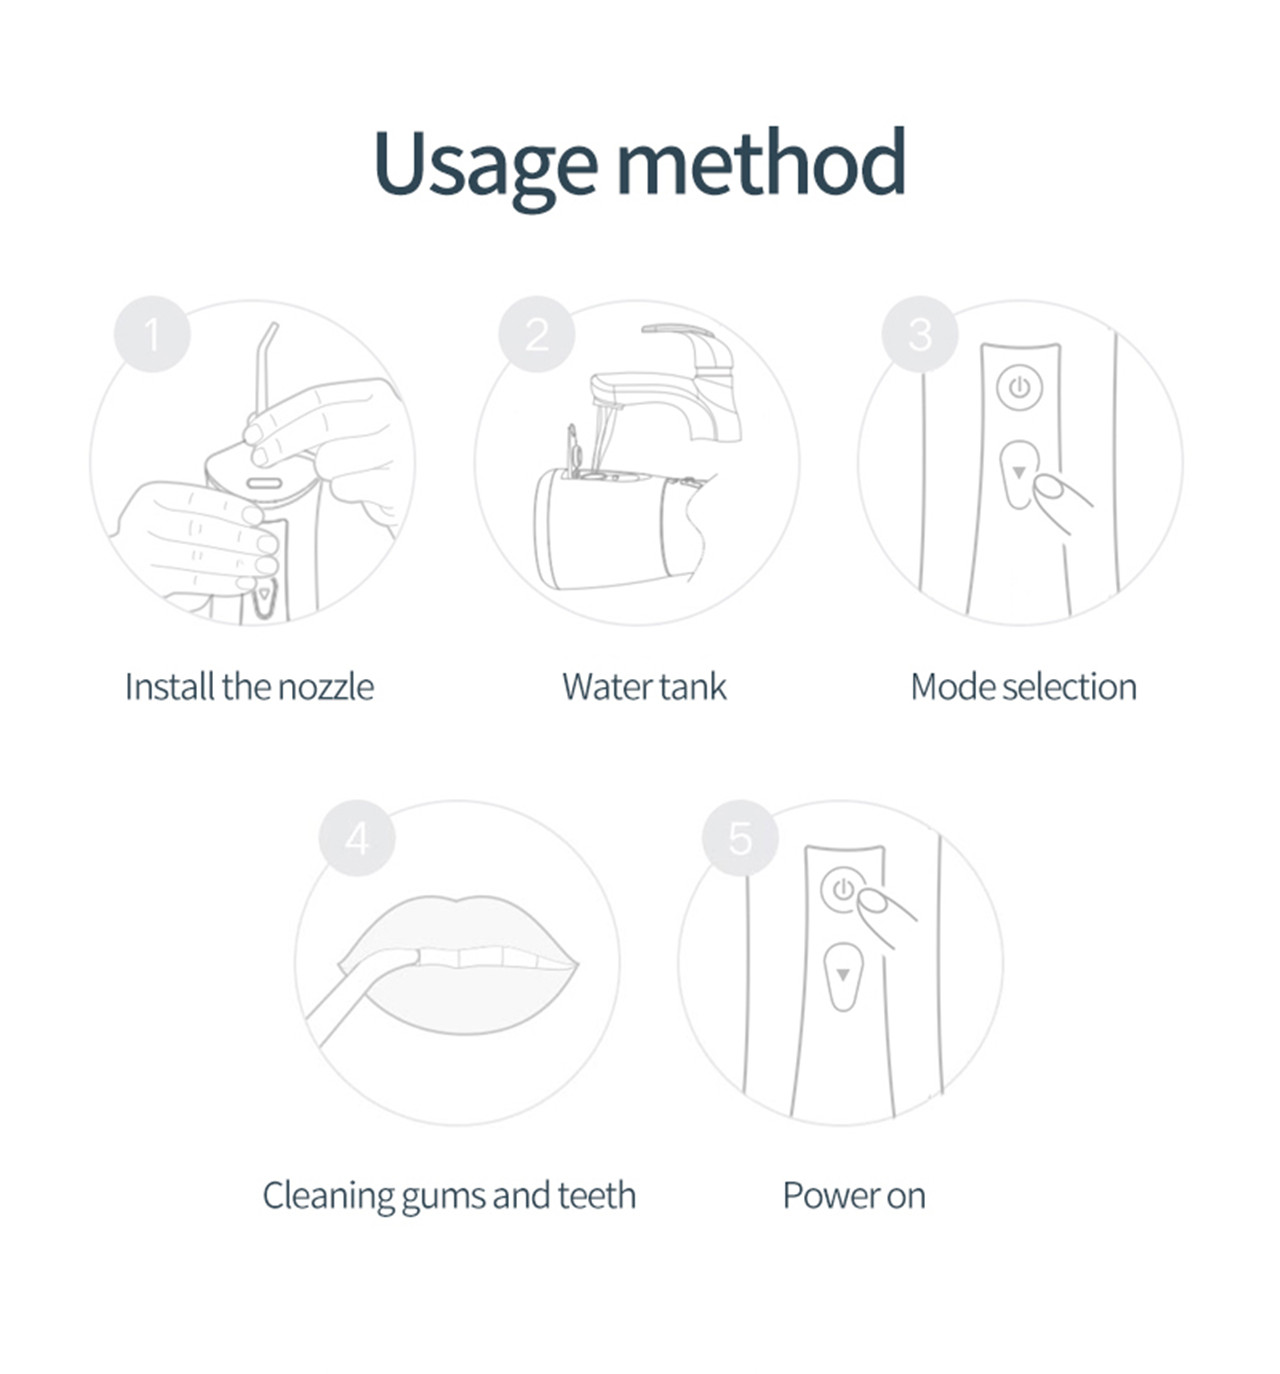 OLED-skjerm for munnskylling av vannplukker for tannbleking (9)